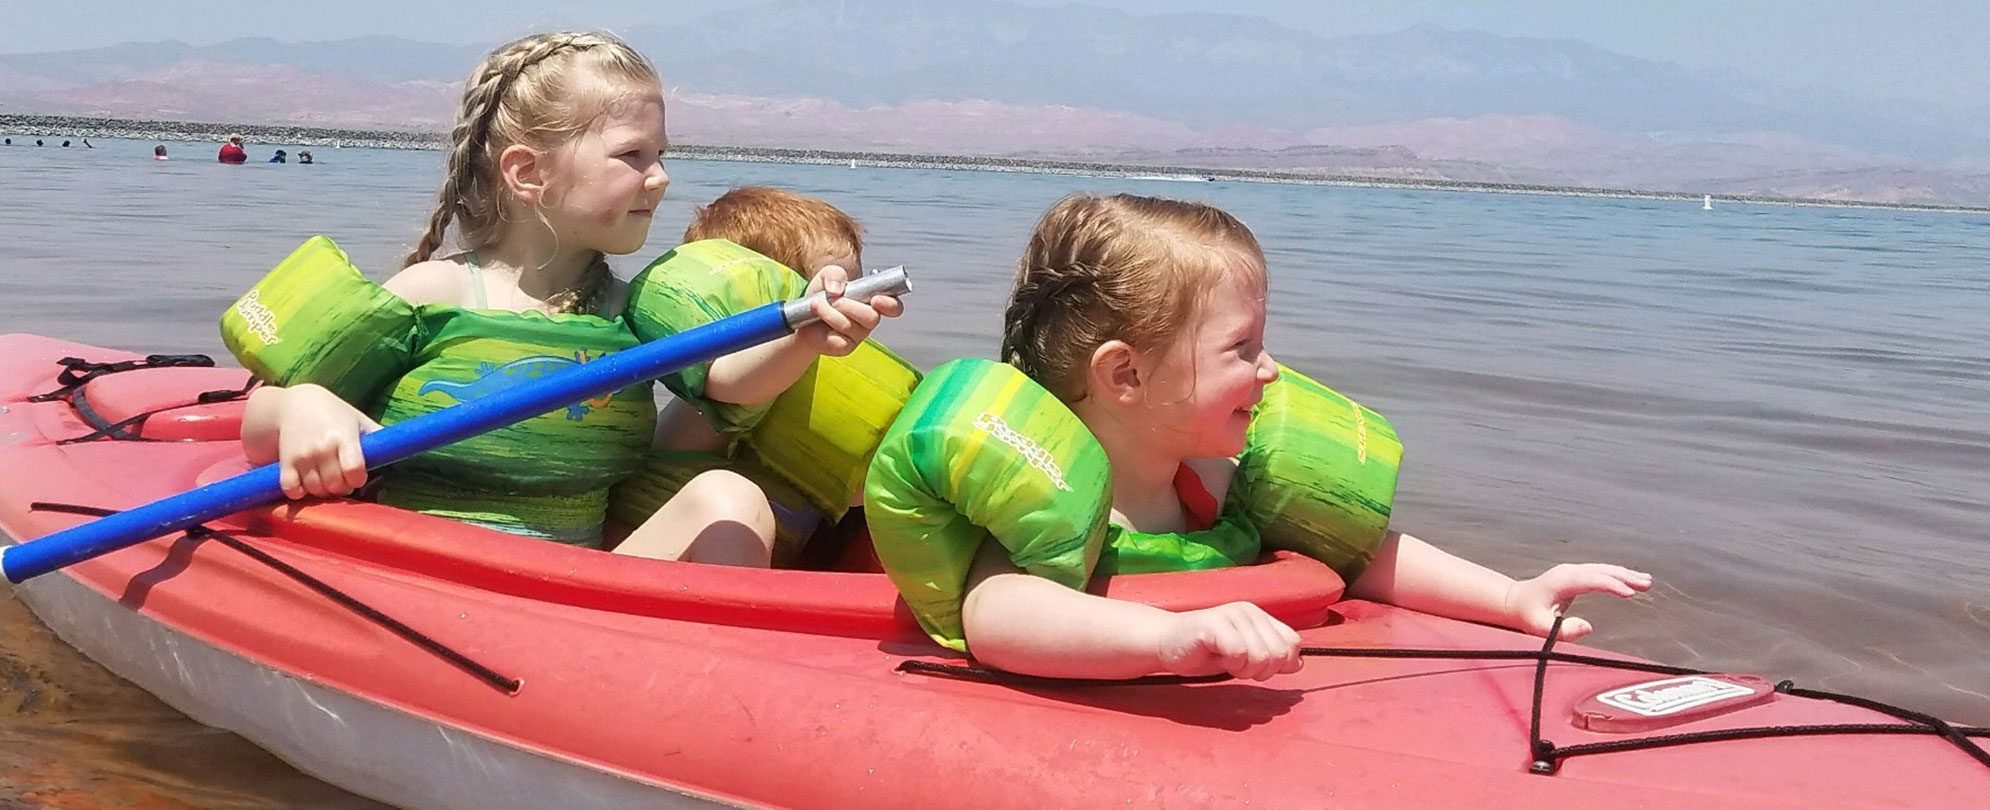 Three smiling kids in a kayak in the ocean.